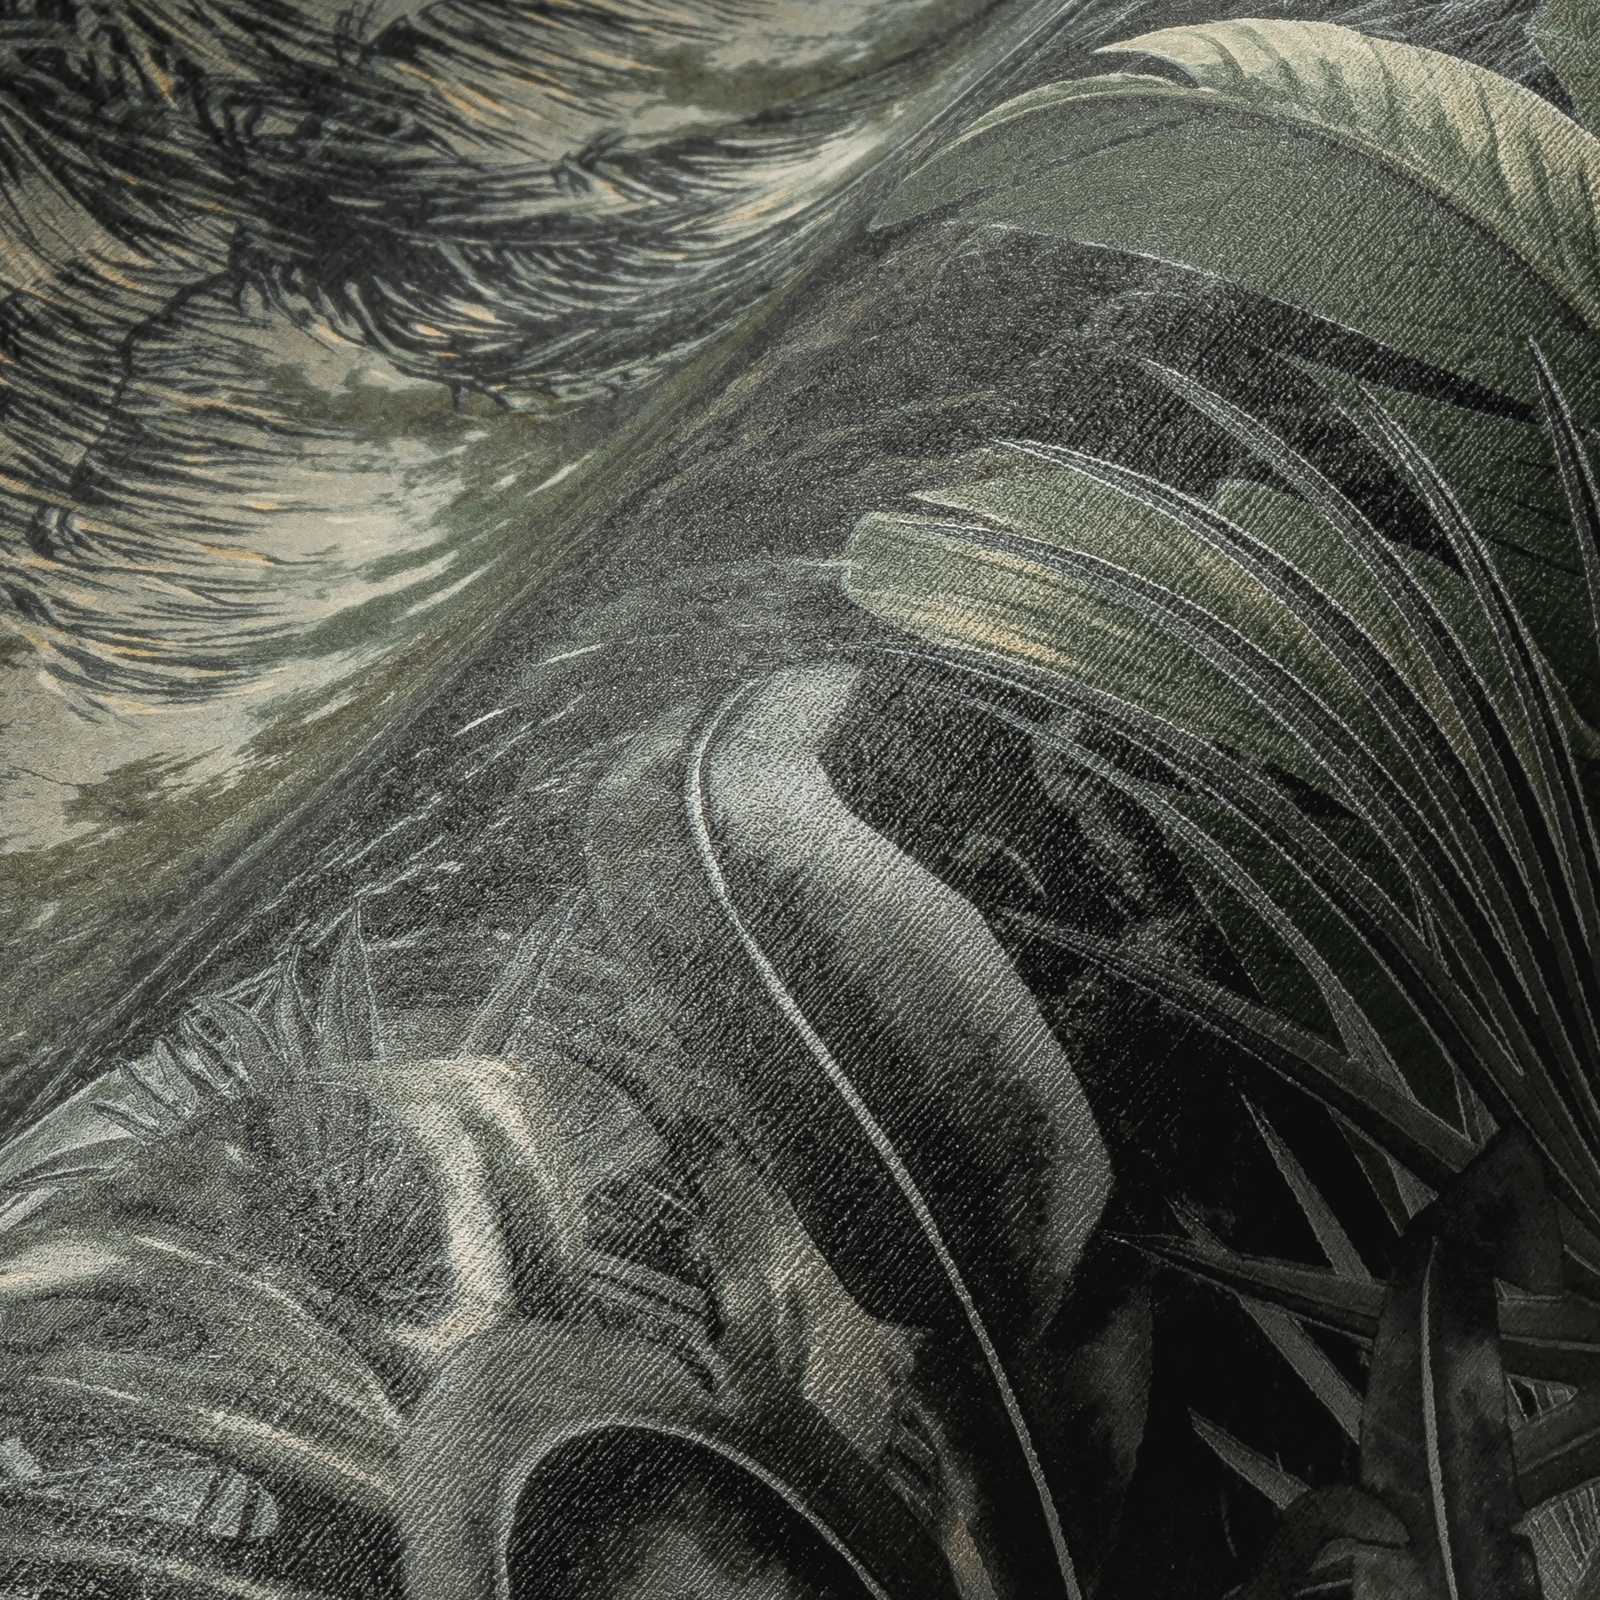             Papel pintado de palmeras, estilo colonial moderno - verde
        